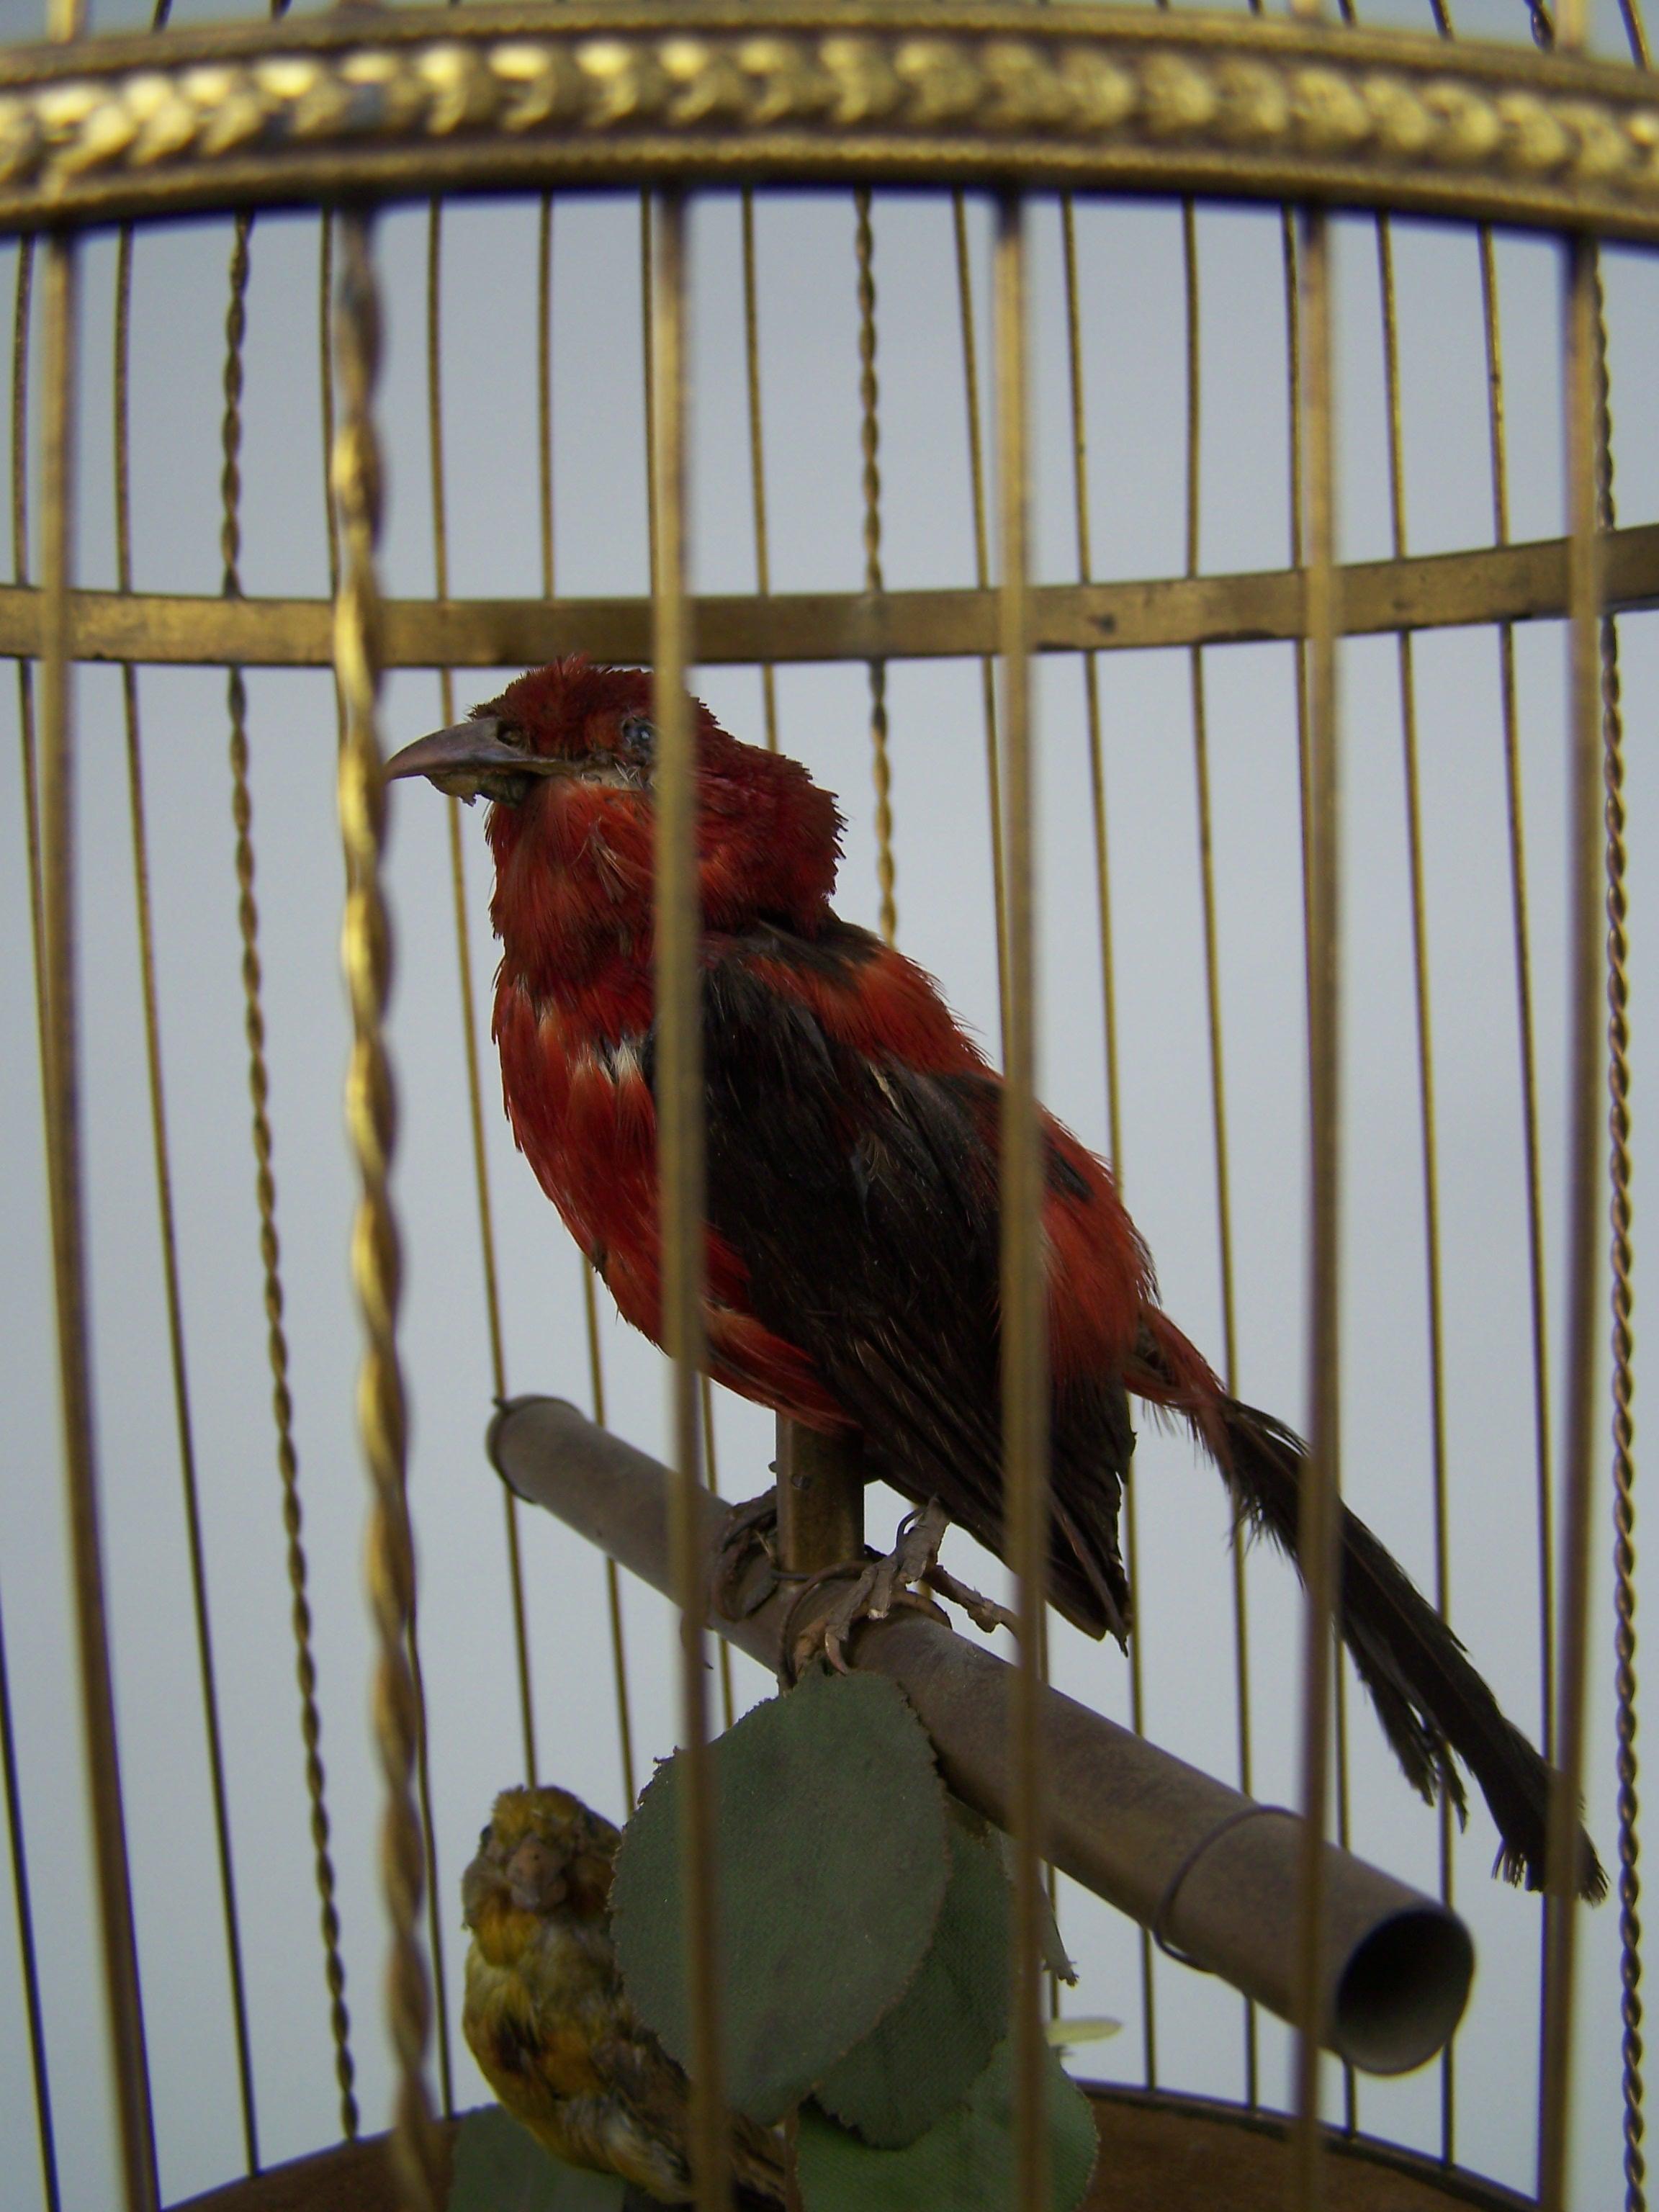 Rare et très décoratif automate d'oiseaux chanteurs.

Fabriqué dans le 4e quart du 19e siècle par Bontems à Paris (France).

Cette cage pour oiseaux chanteurs est dotée d'une base en laiton doré pour sceller le mécanisme. Dans la cage se trouvent